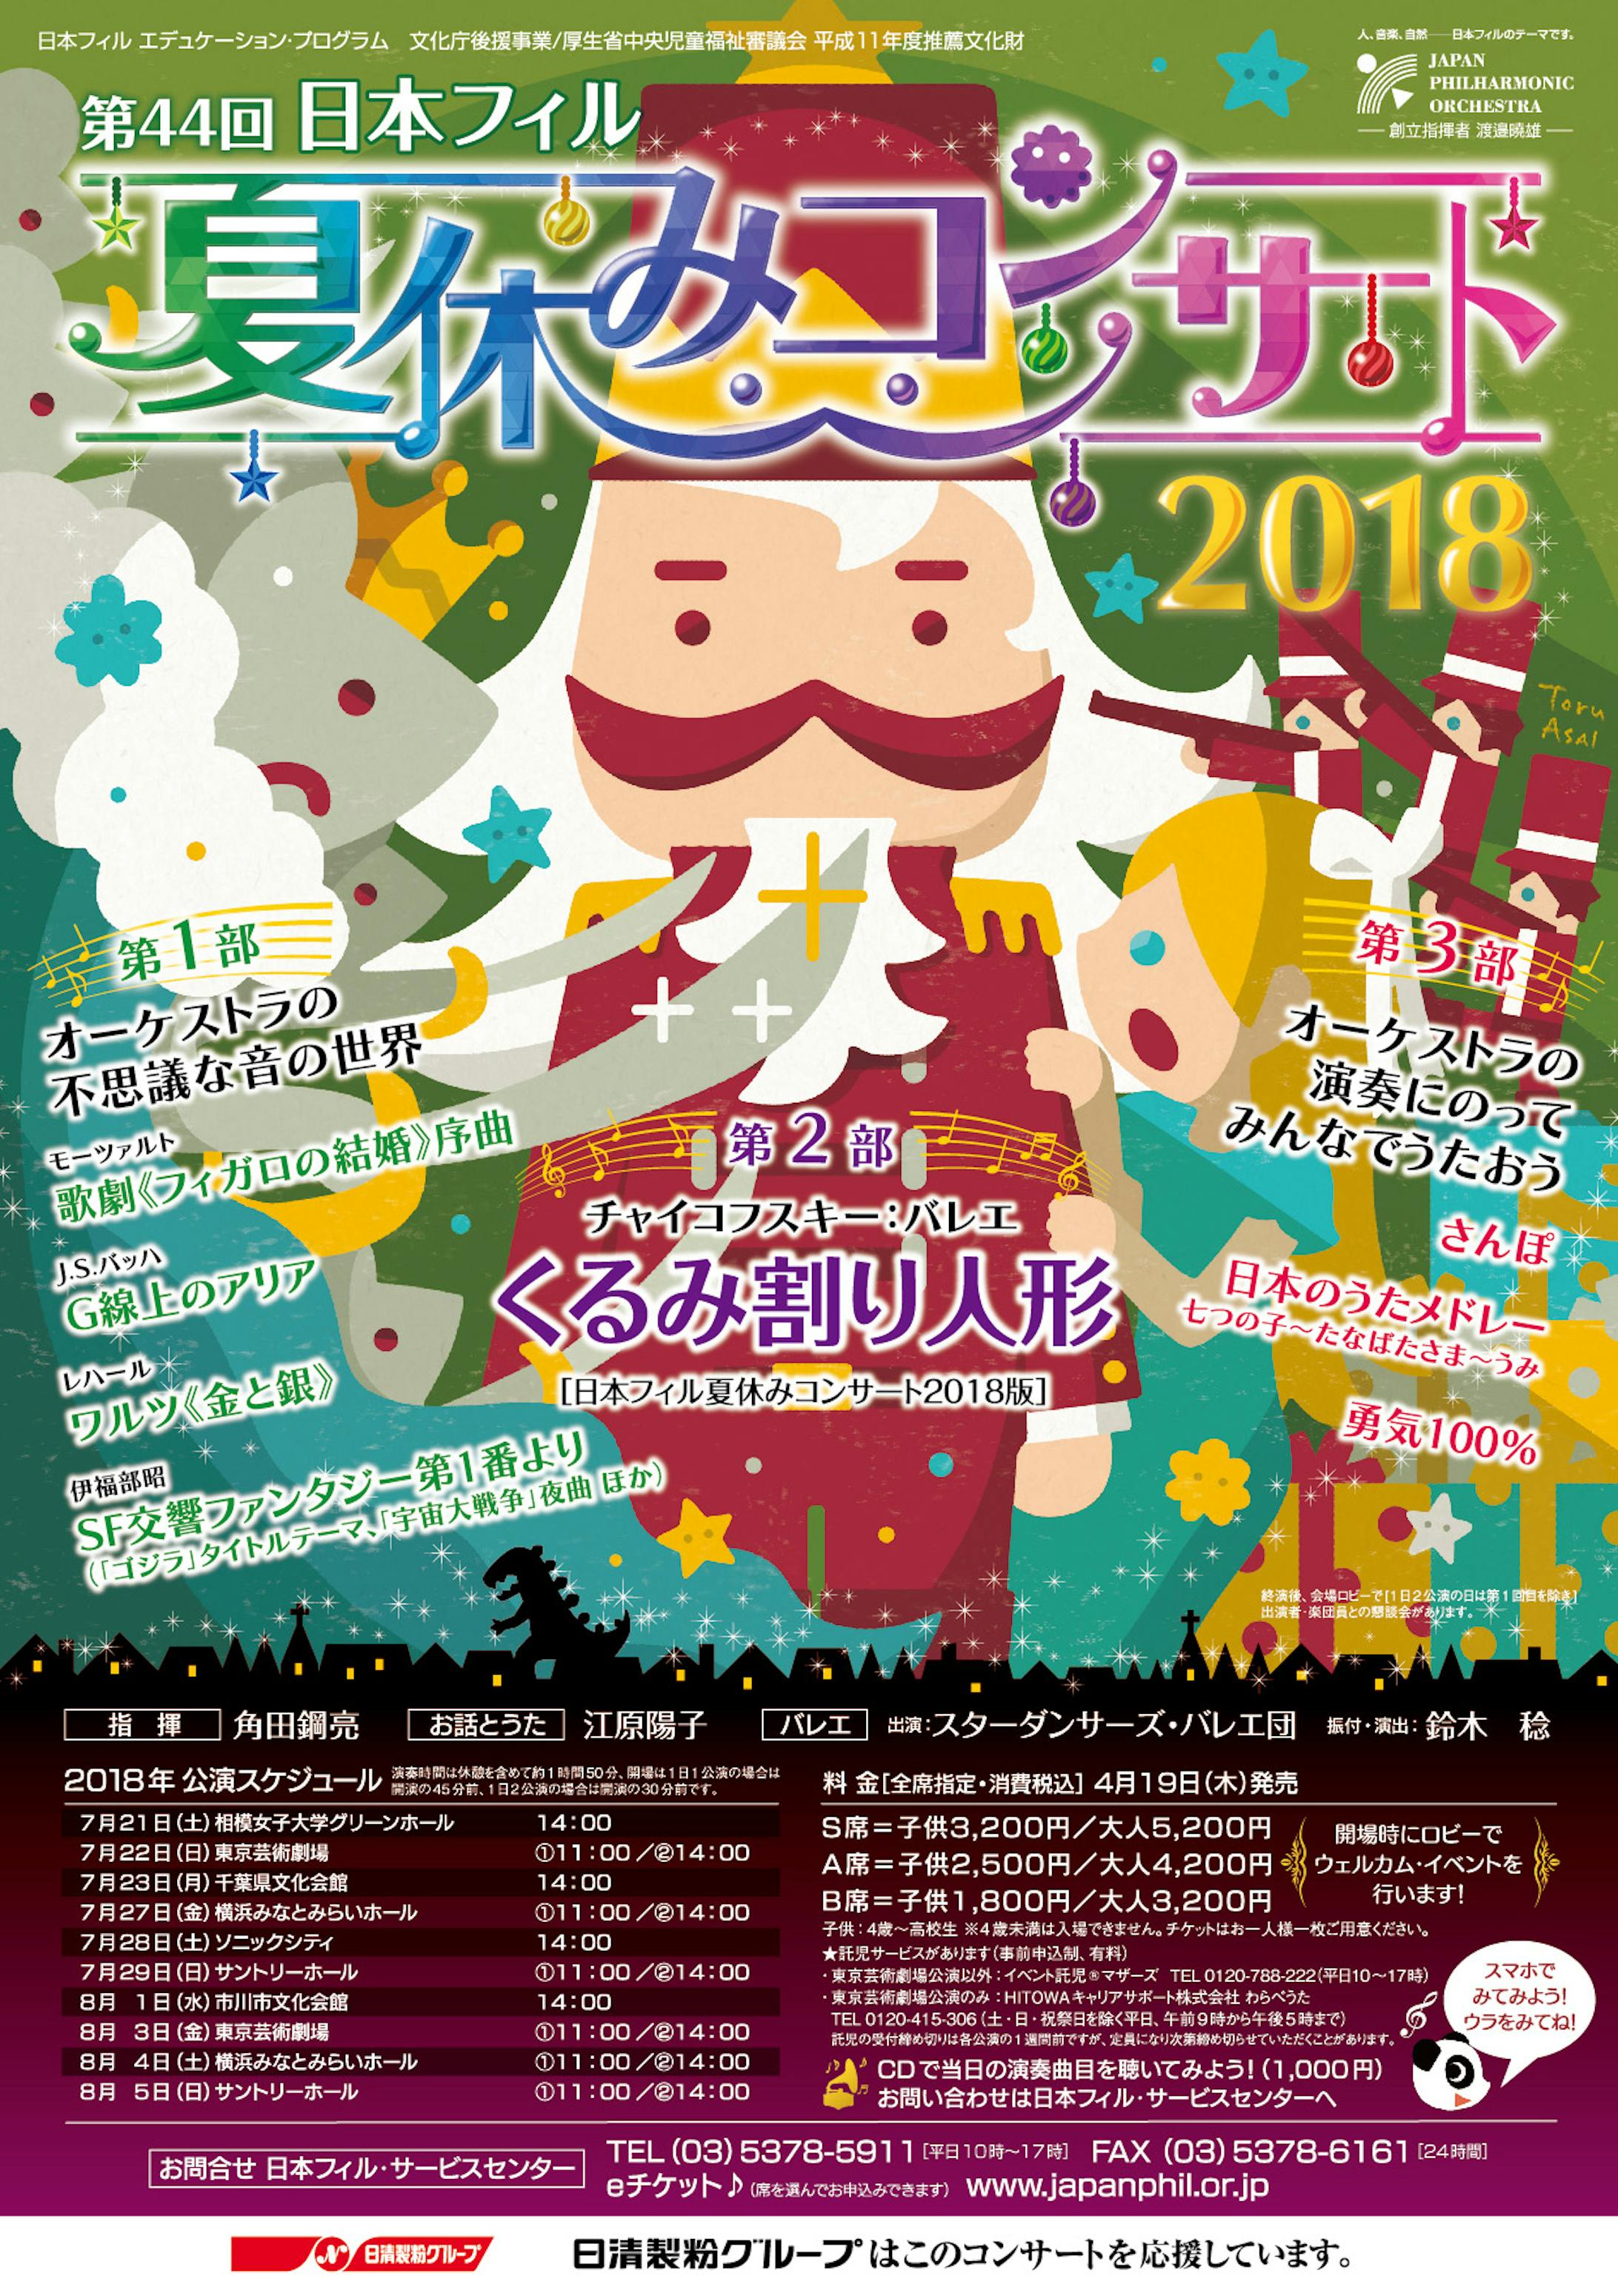 日本フィル 夏休みコンサート 2018-1